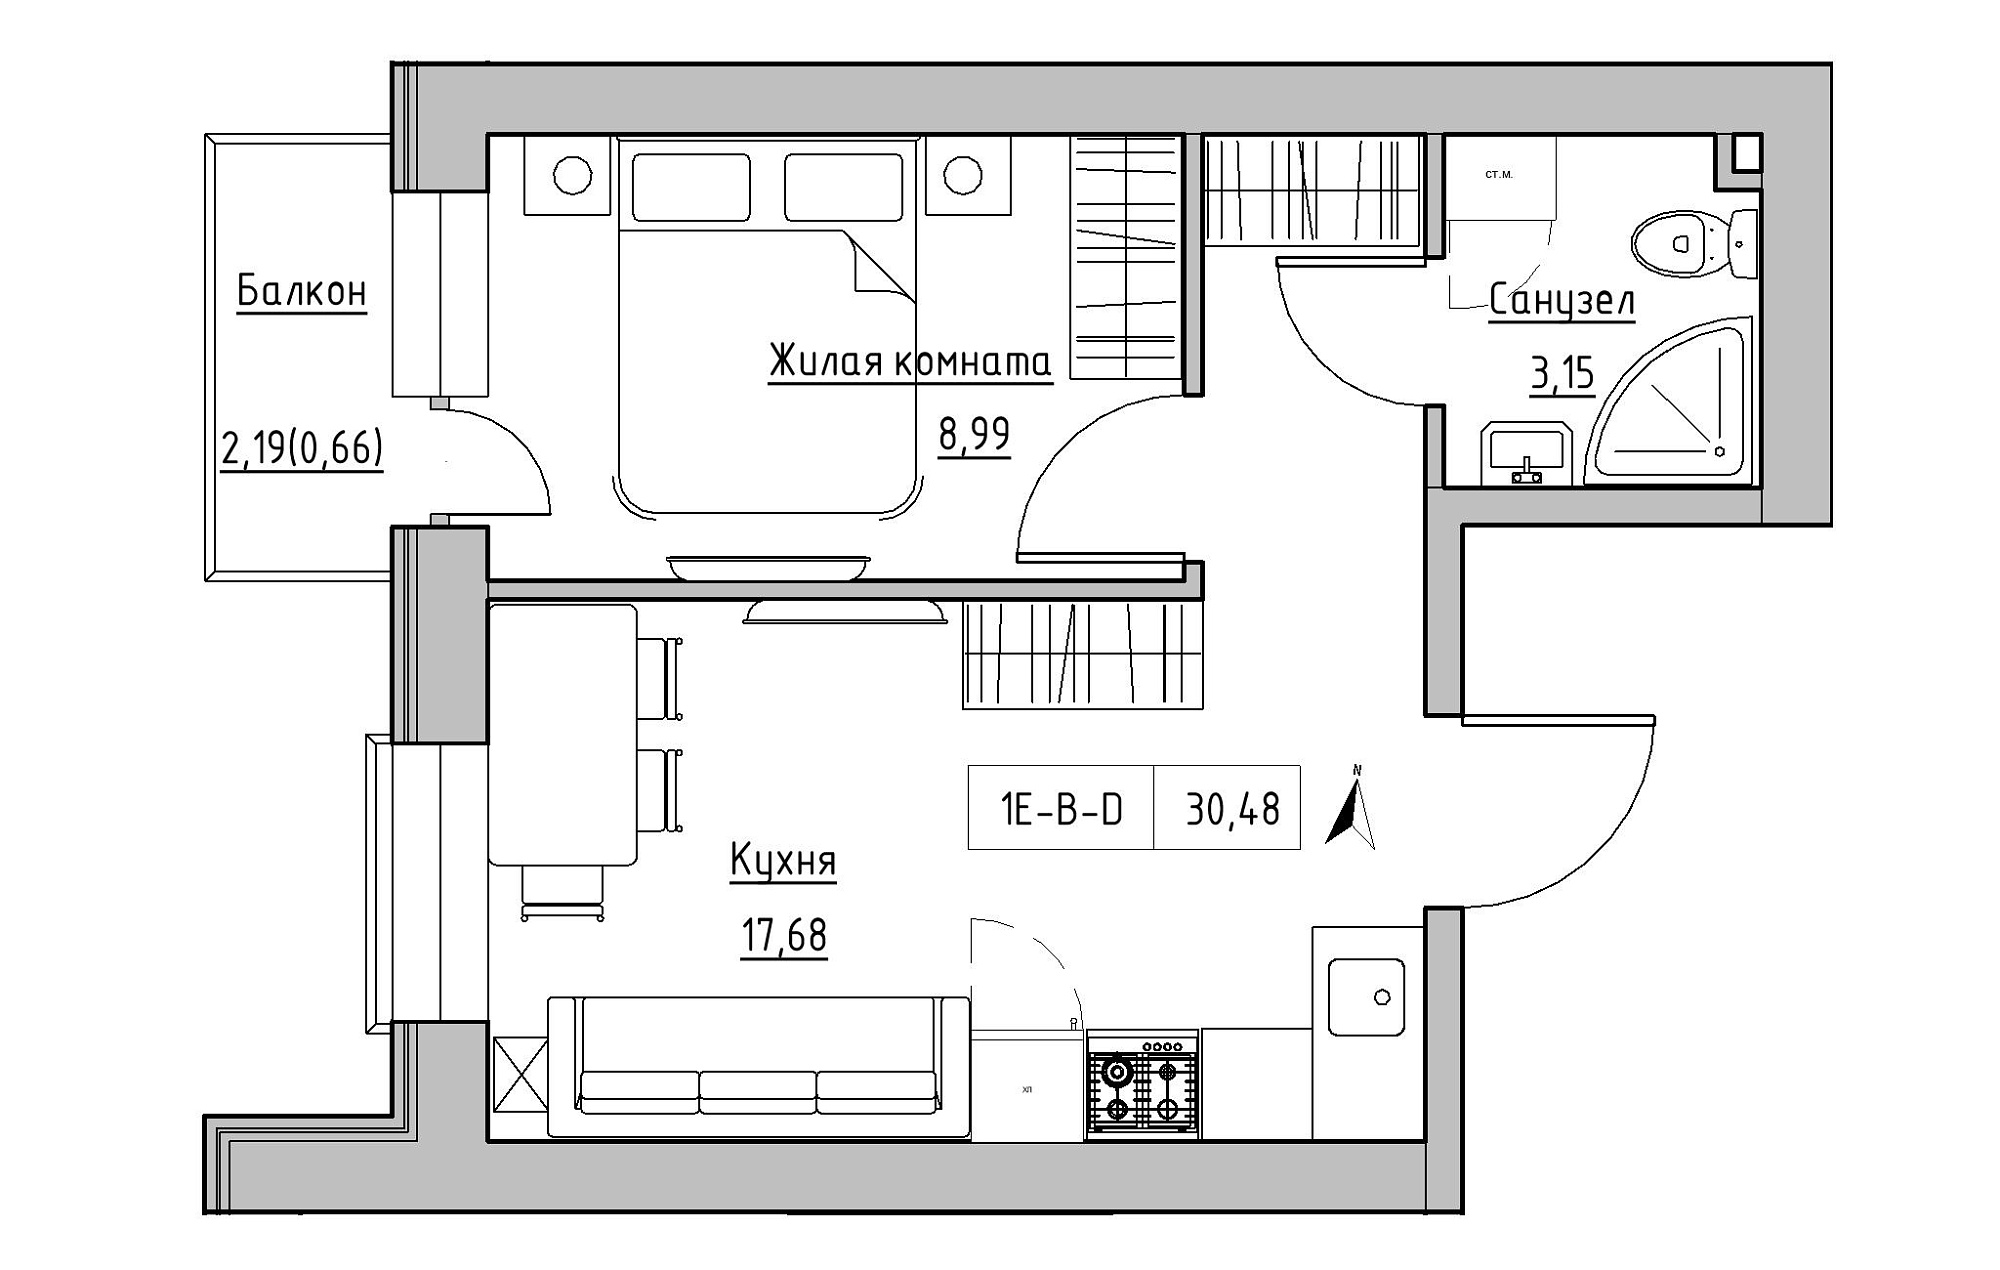 Планировка 1-к квартира площей 30.48м2, KS-019-03/0003.